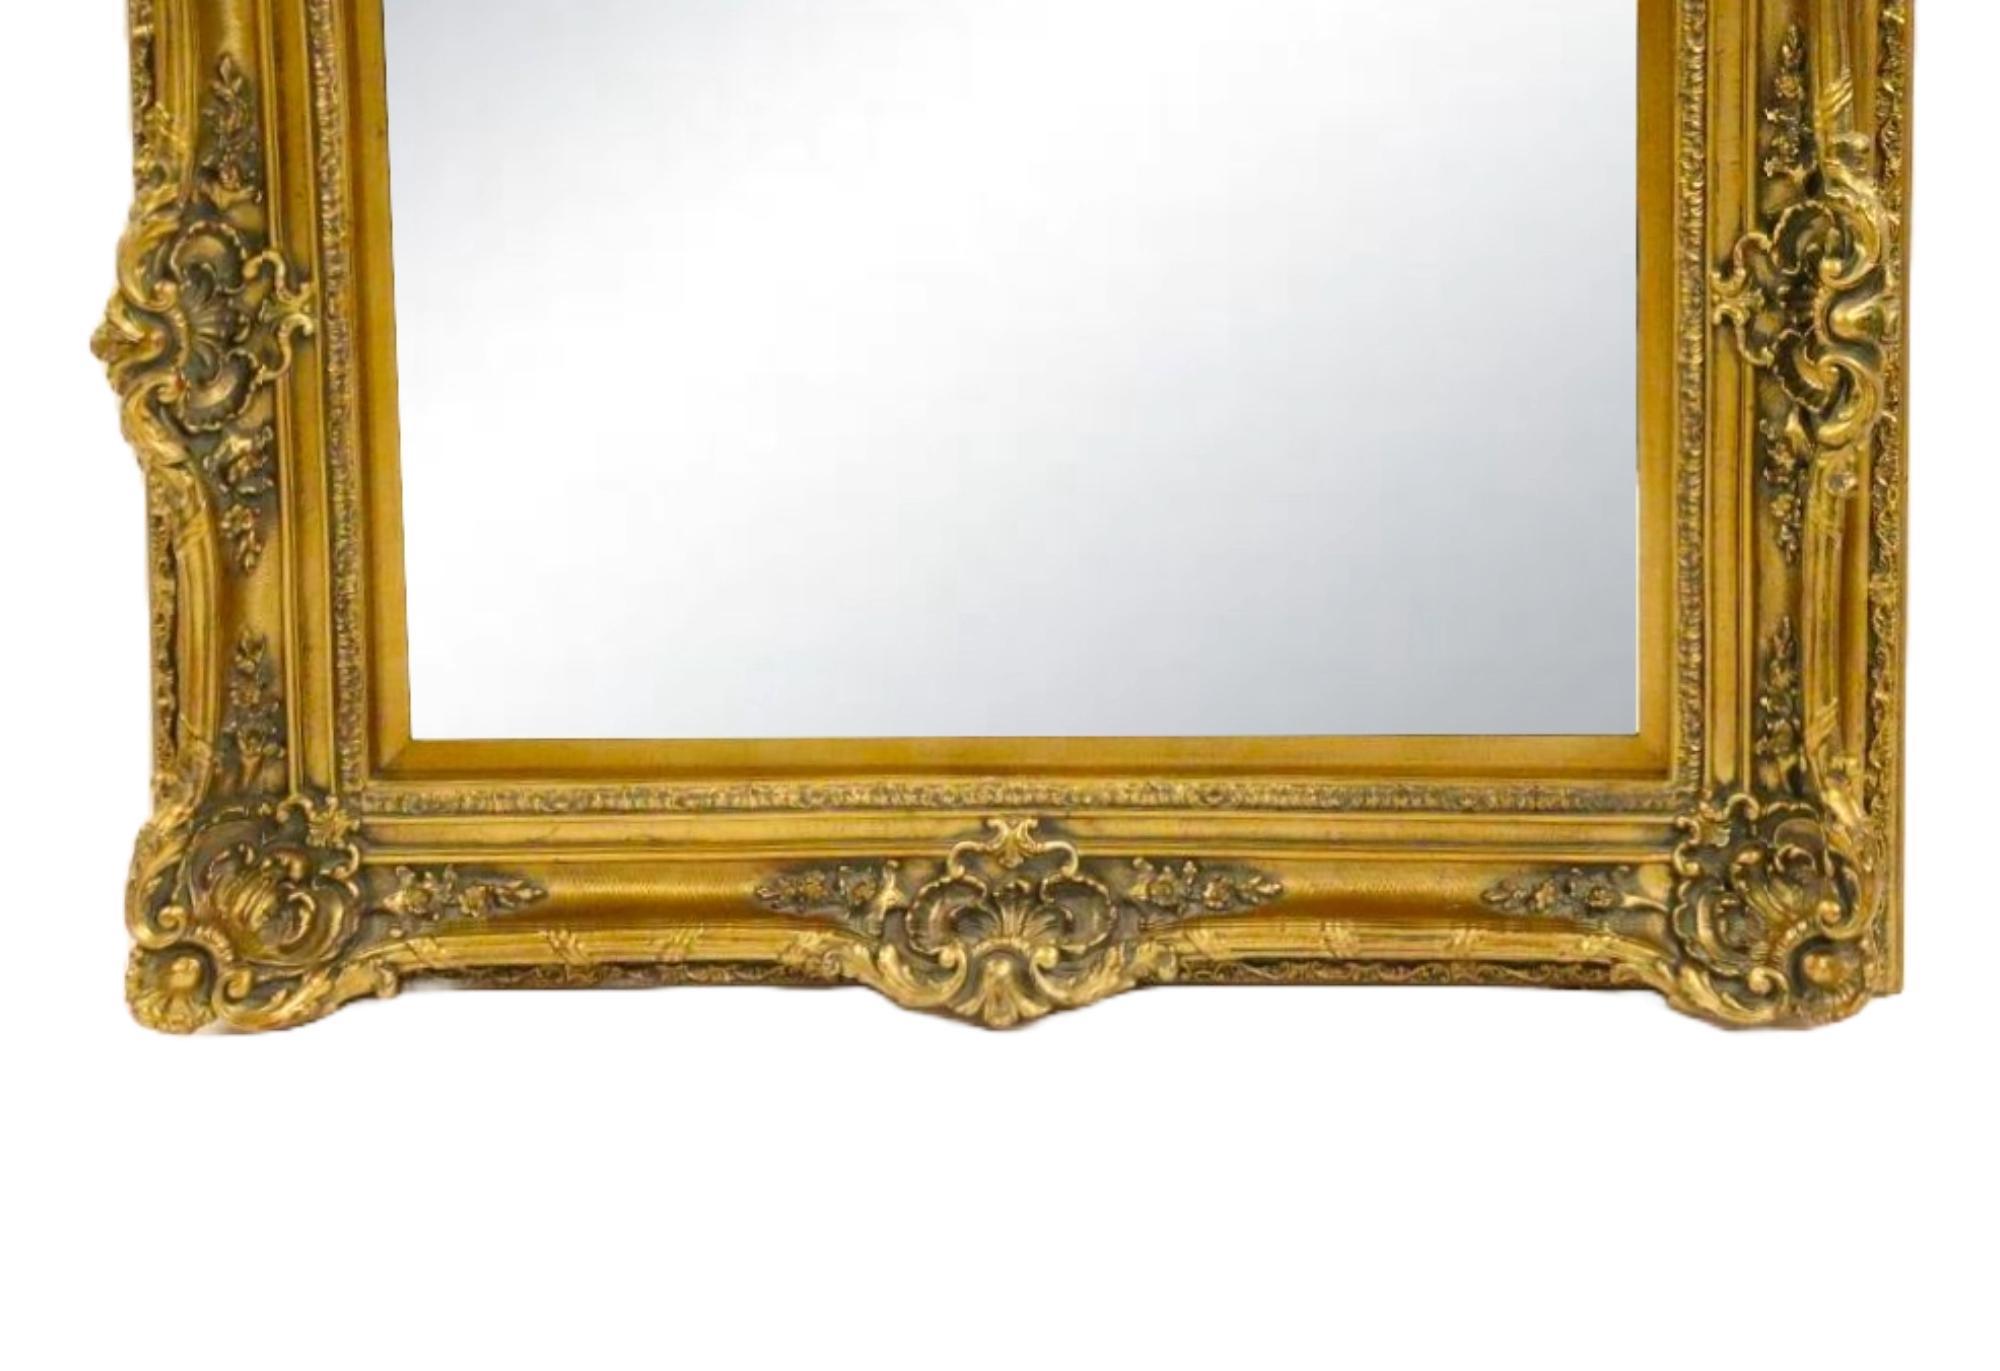 Ce miroir mural encadré en bois doré, sculpté à la main, rehausse votre décoration intérieure. Le cadre est orné d'un motif floral richement décoré, réalisé de manière experte pour créer un impact visuel époustouflant.
Ce grand miroir de qualité